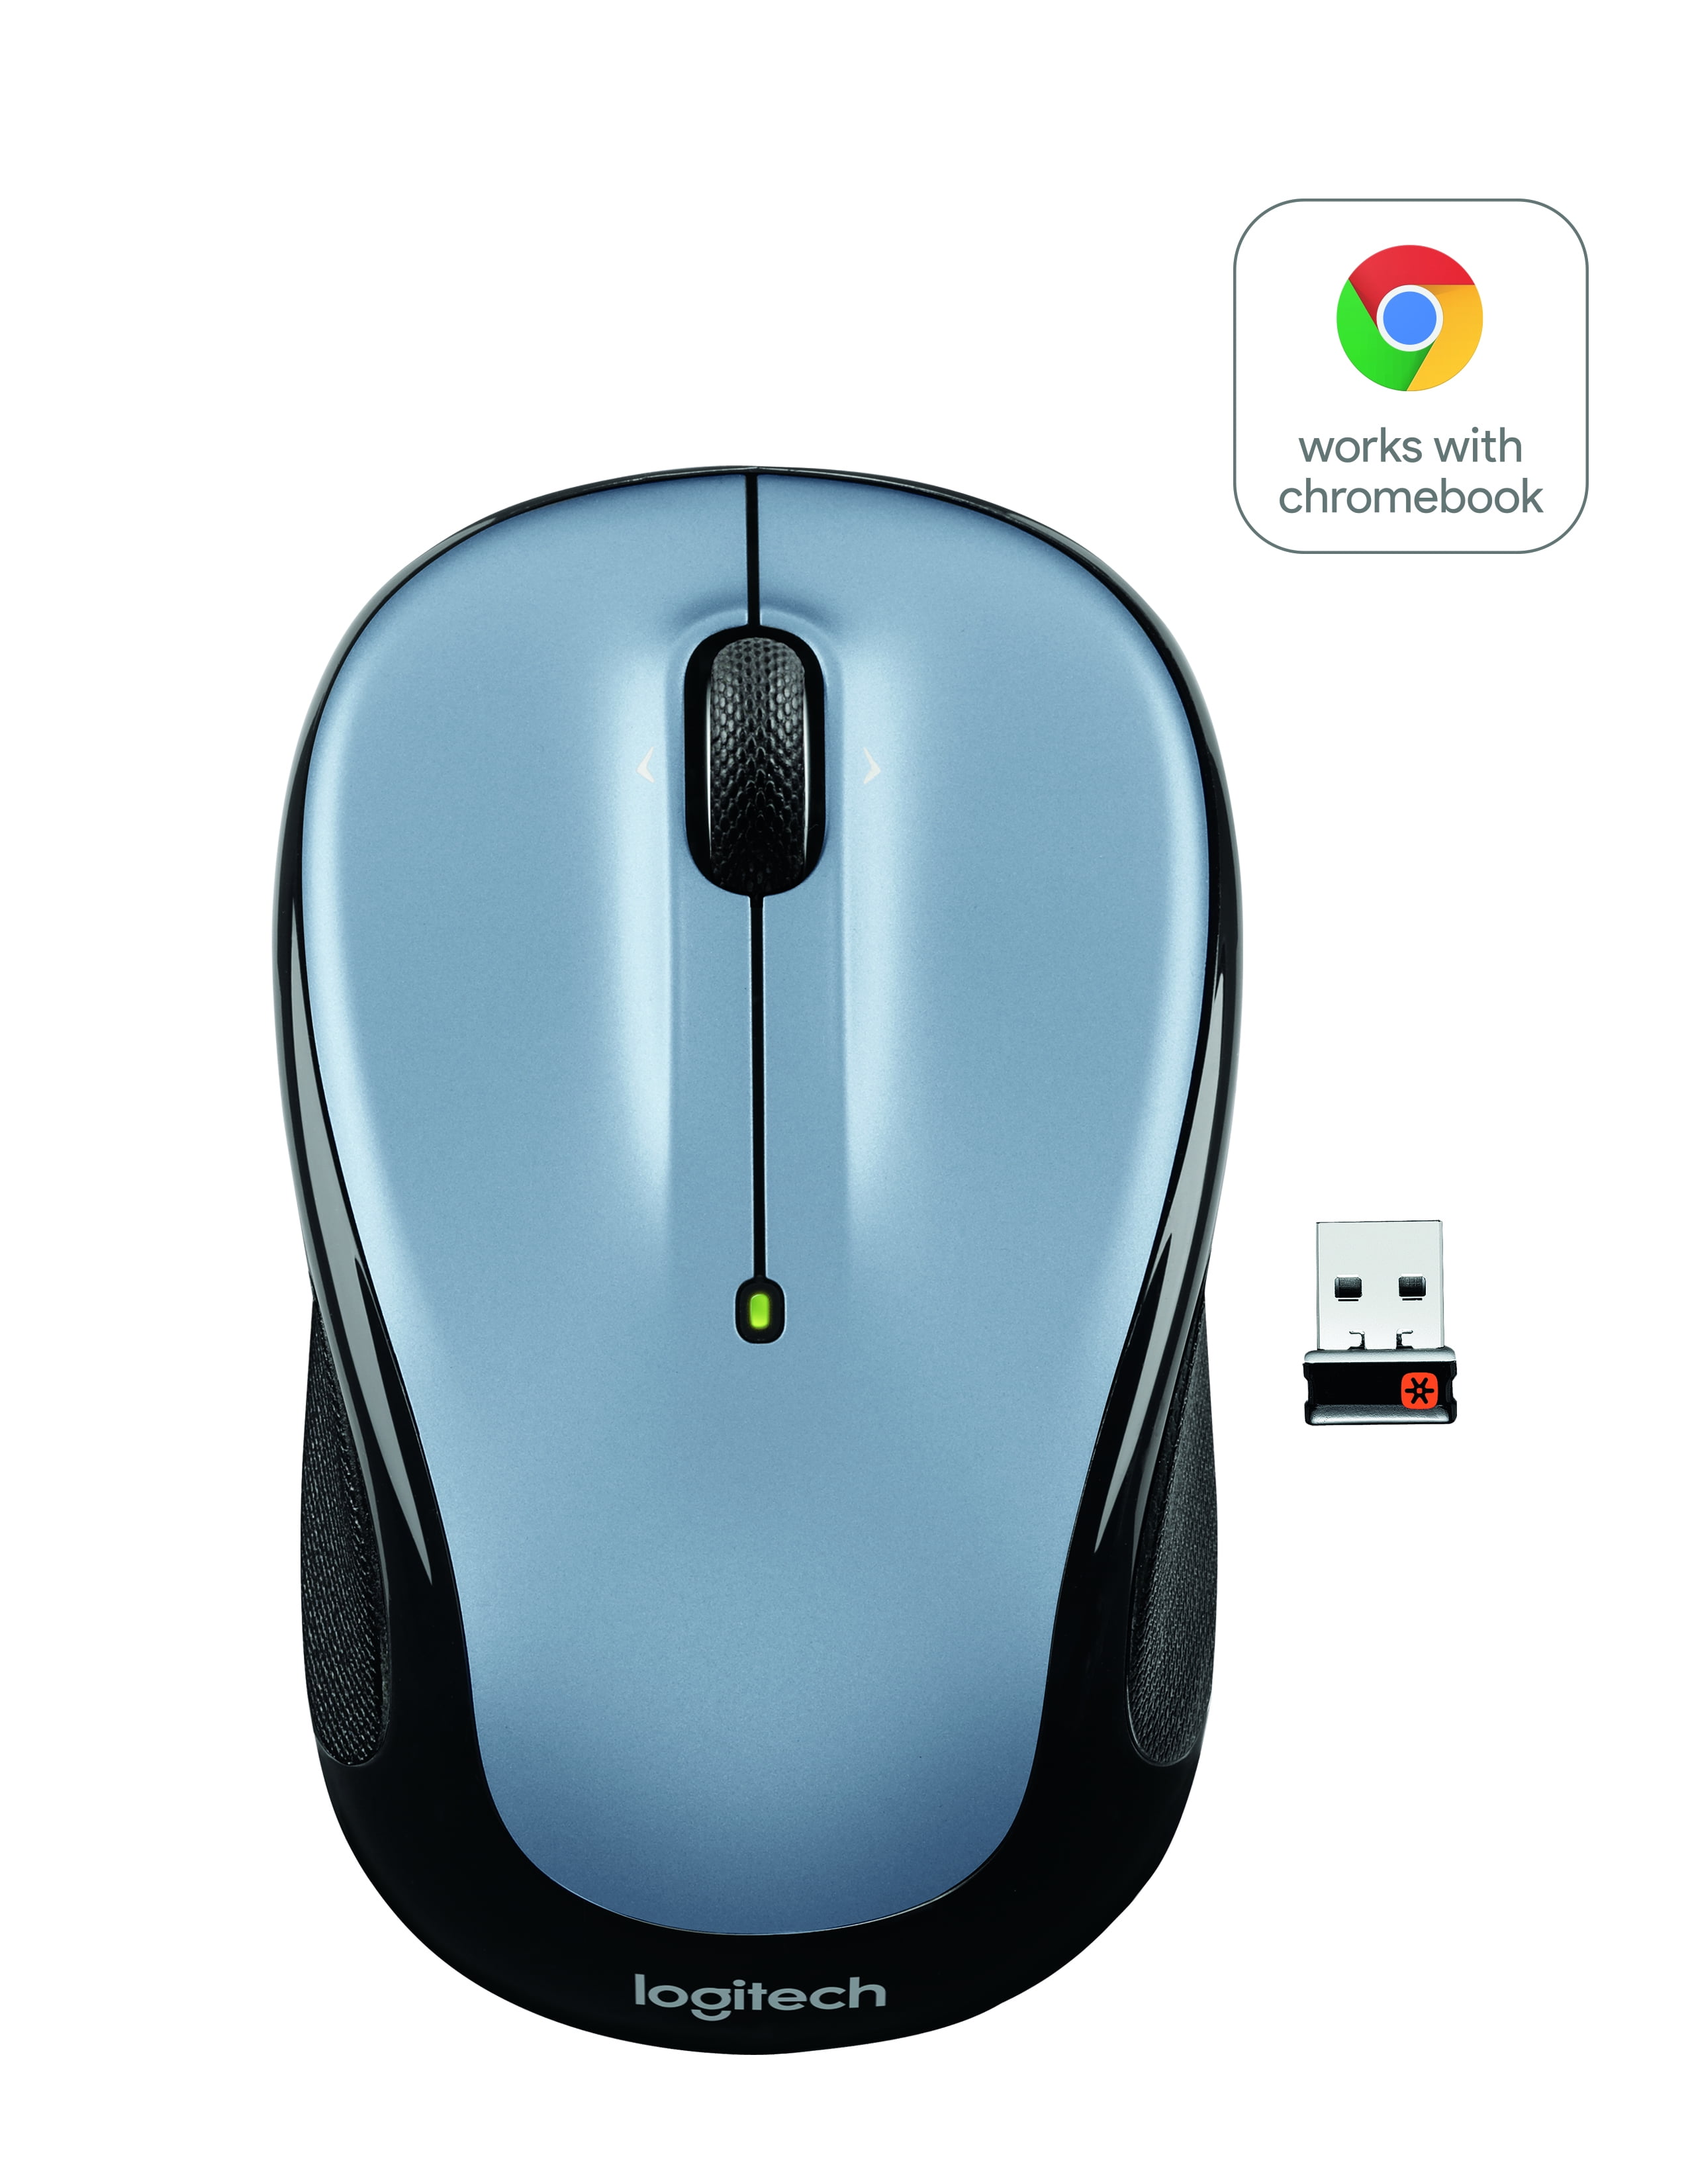 hjælpe indhold Hvor Logitech Compact Wireless Mouse, Gray - Walmart.com